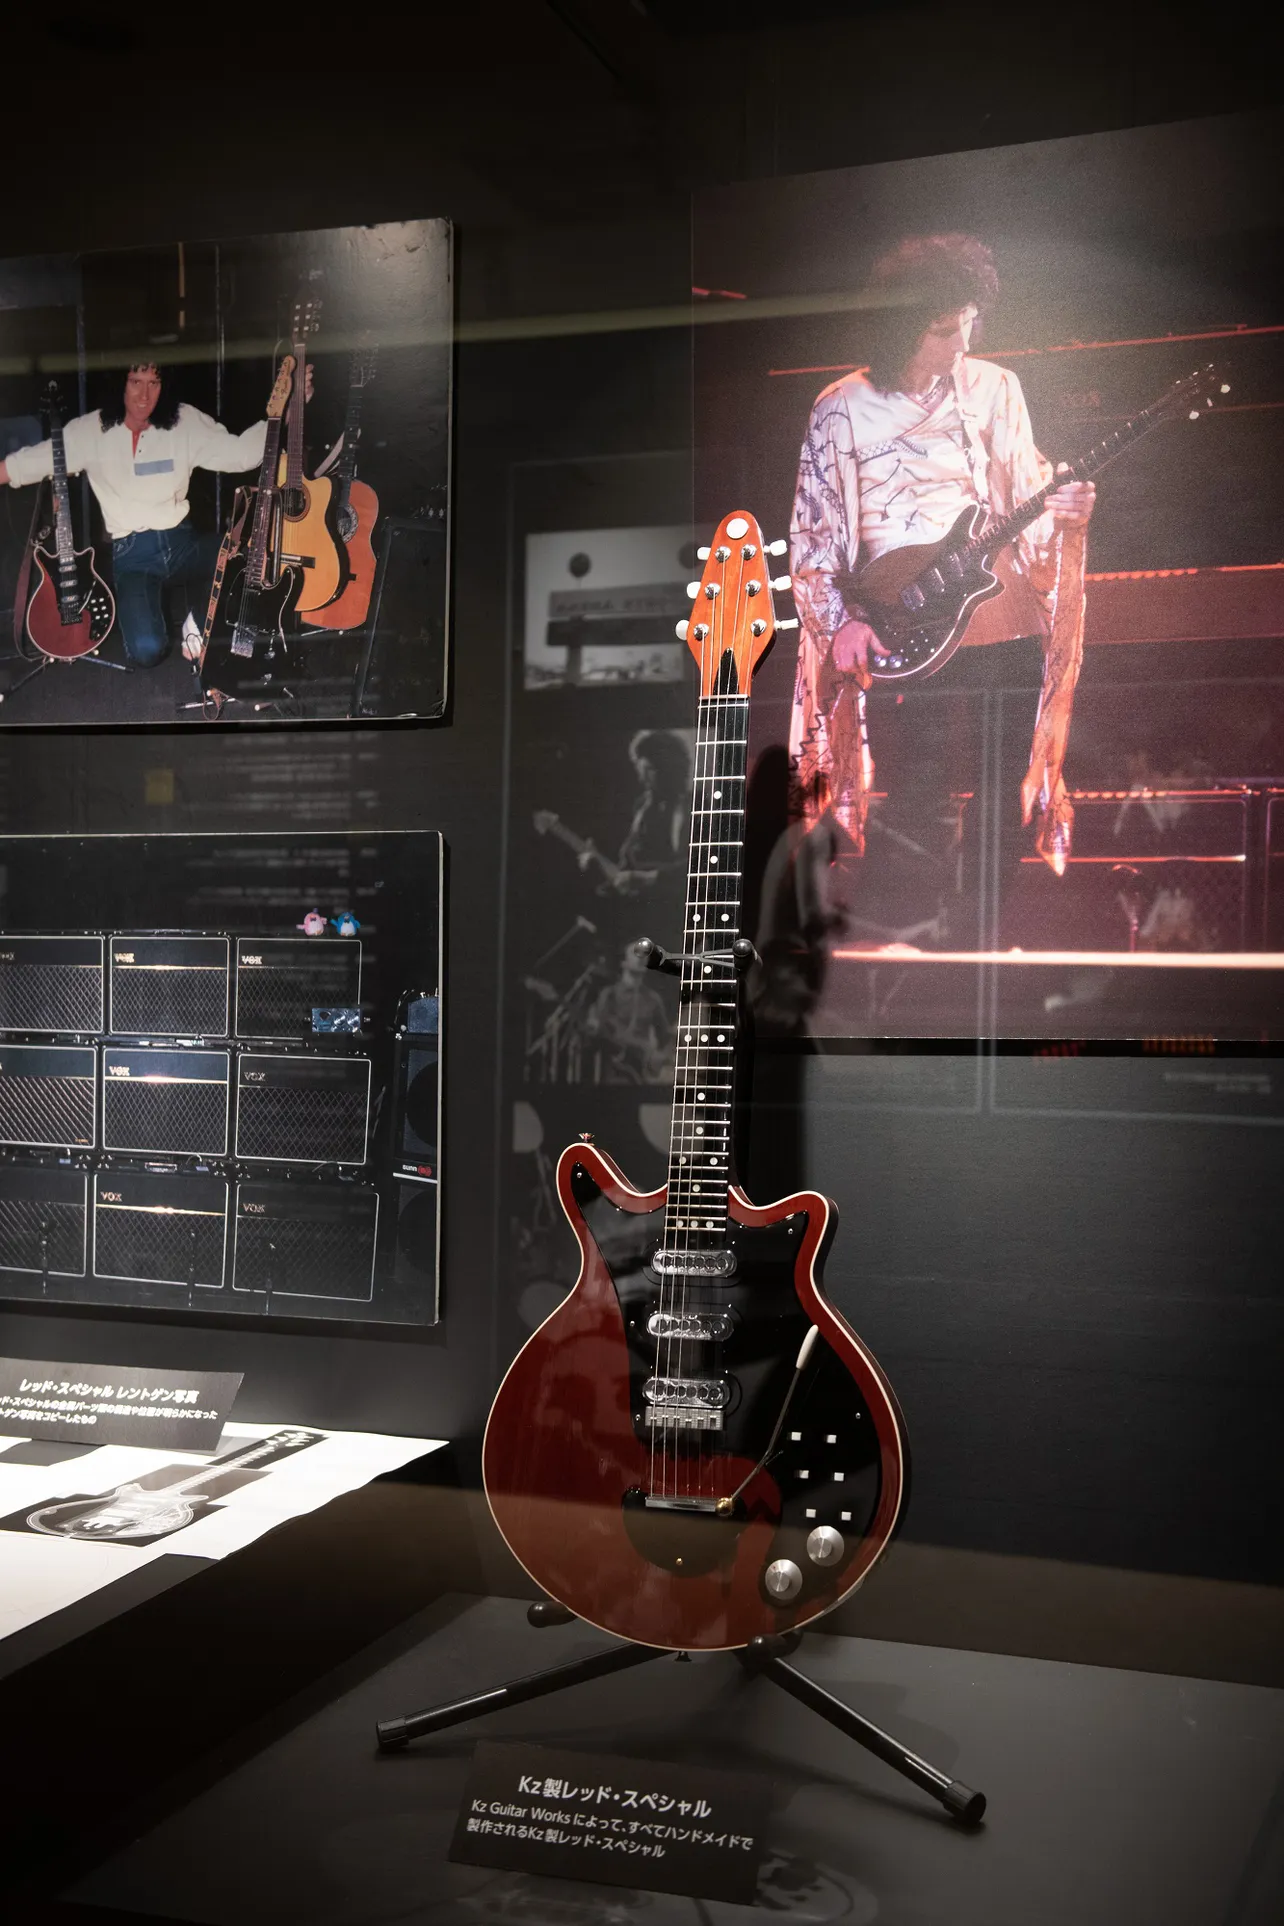 ブライアン・メイのギター「レッド・スペシャル」は、逗子のギター工房・Kz Guitar Worksでシグネチャーモデルが制作されている